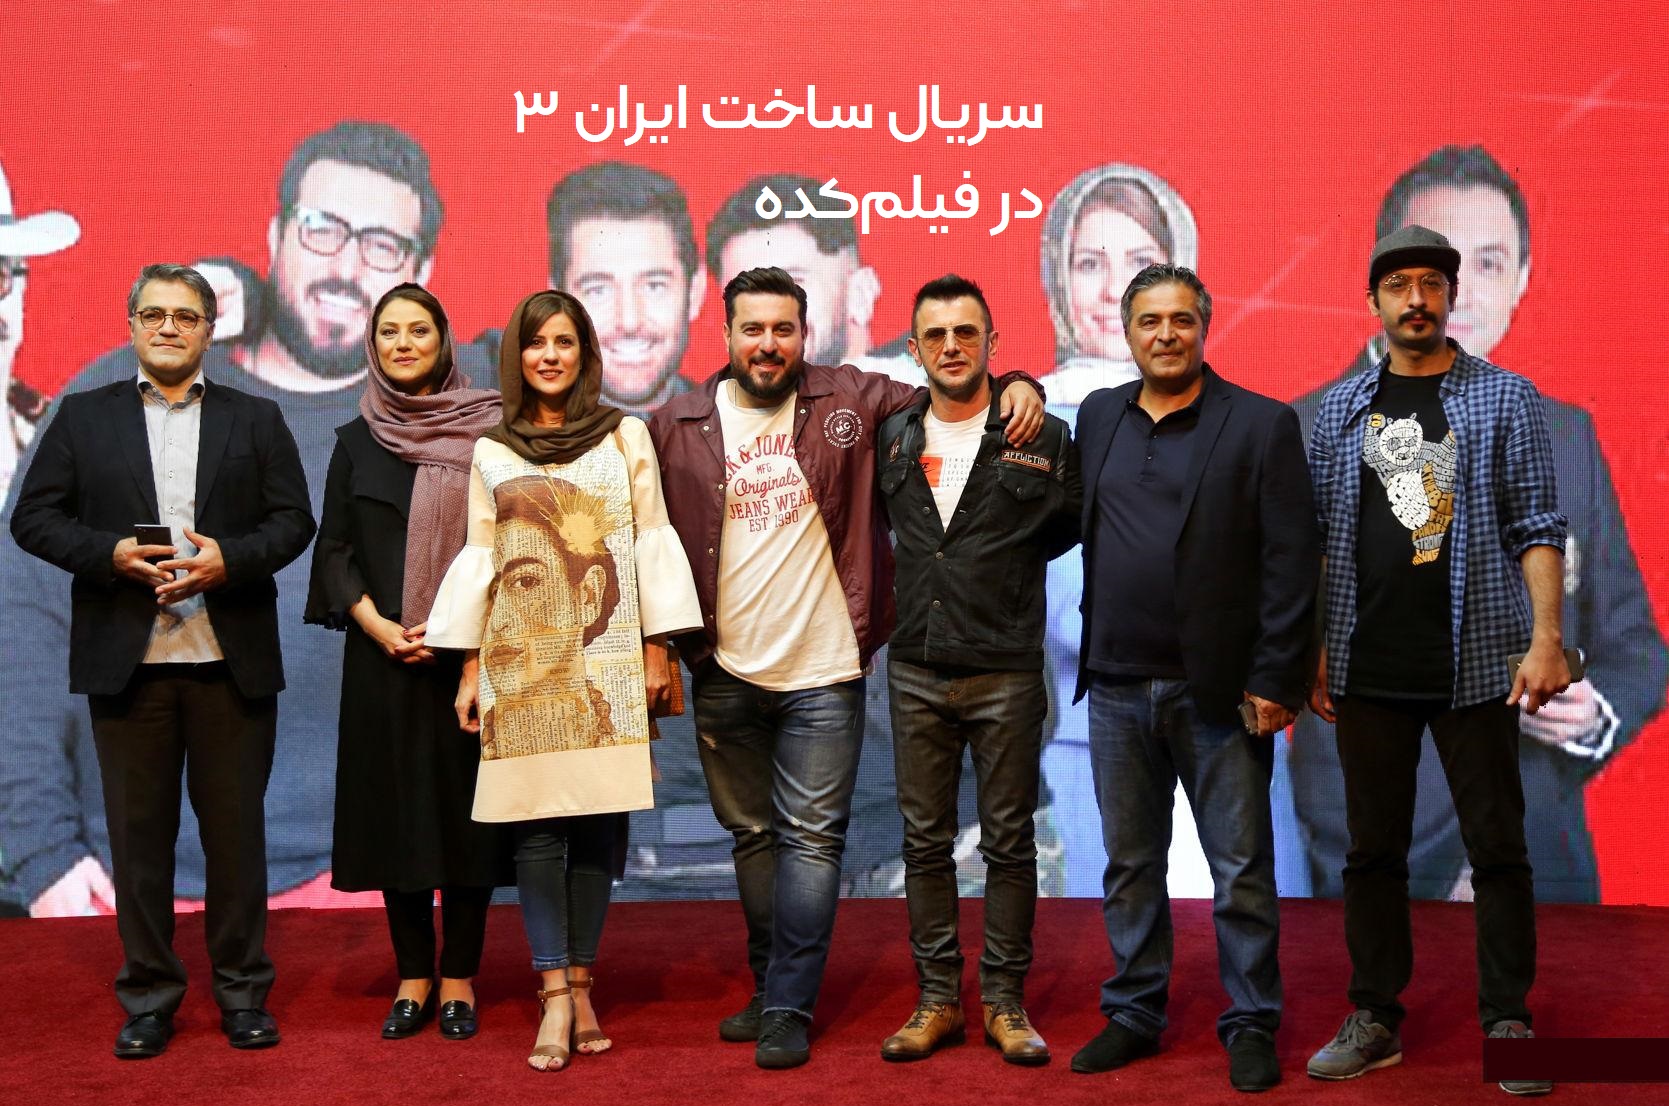  سریال شبکه نمایش خانگی ساخت ایران 3 به کارگردانی بهمن گودرزی